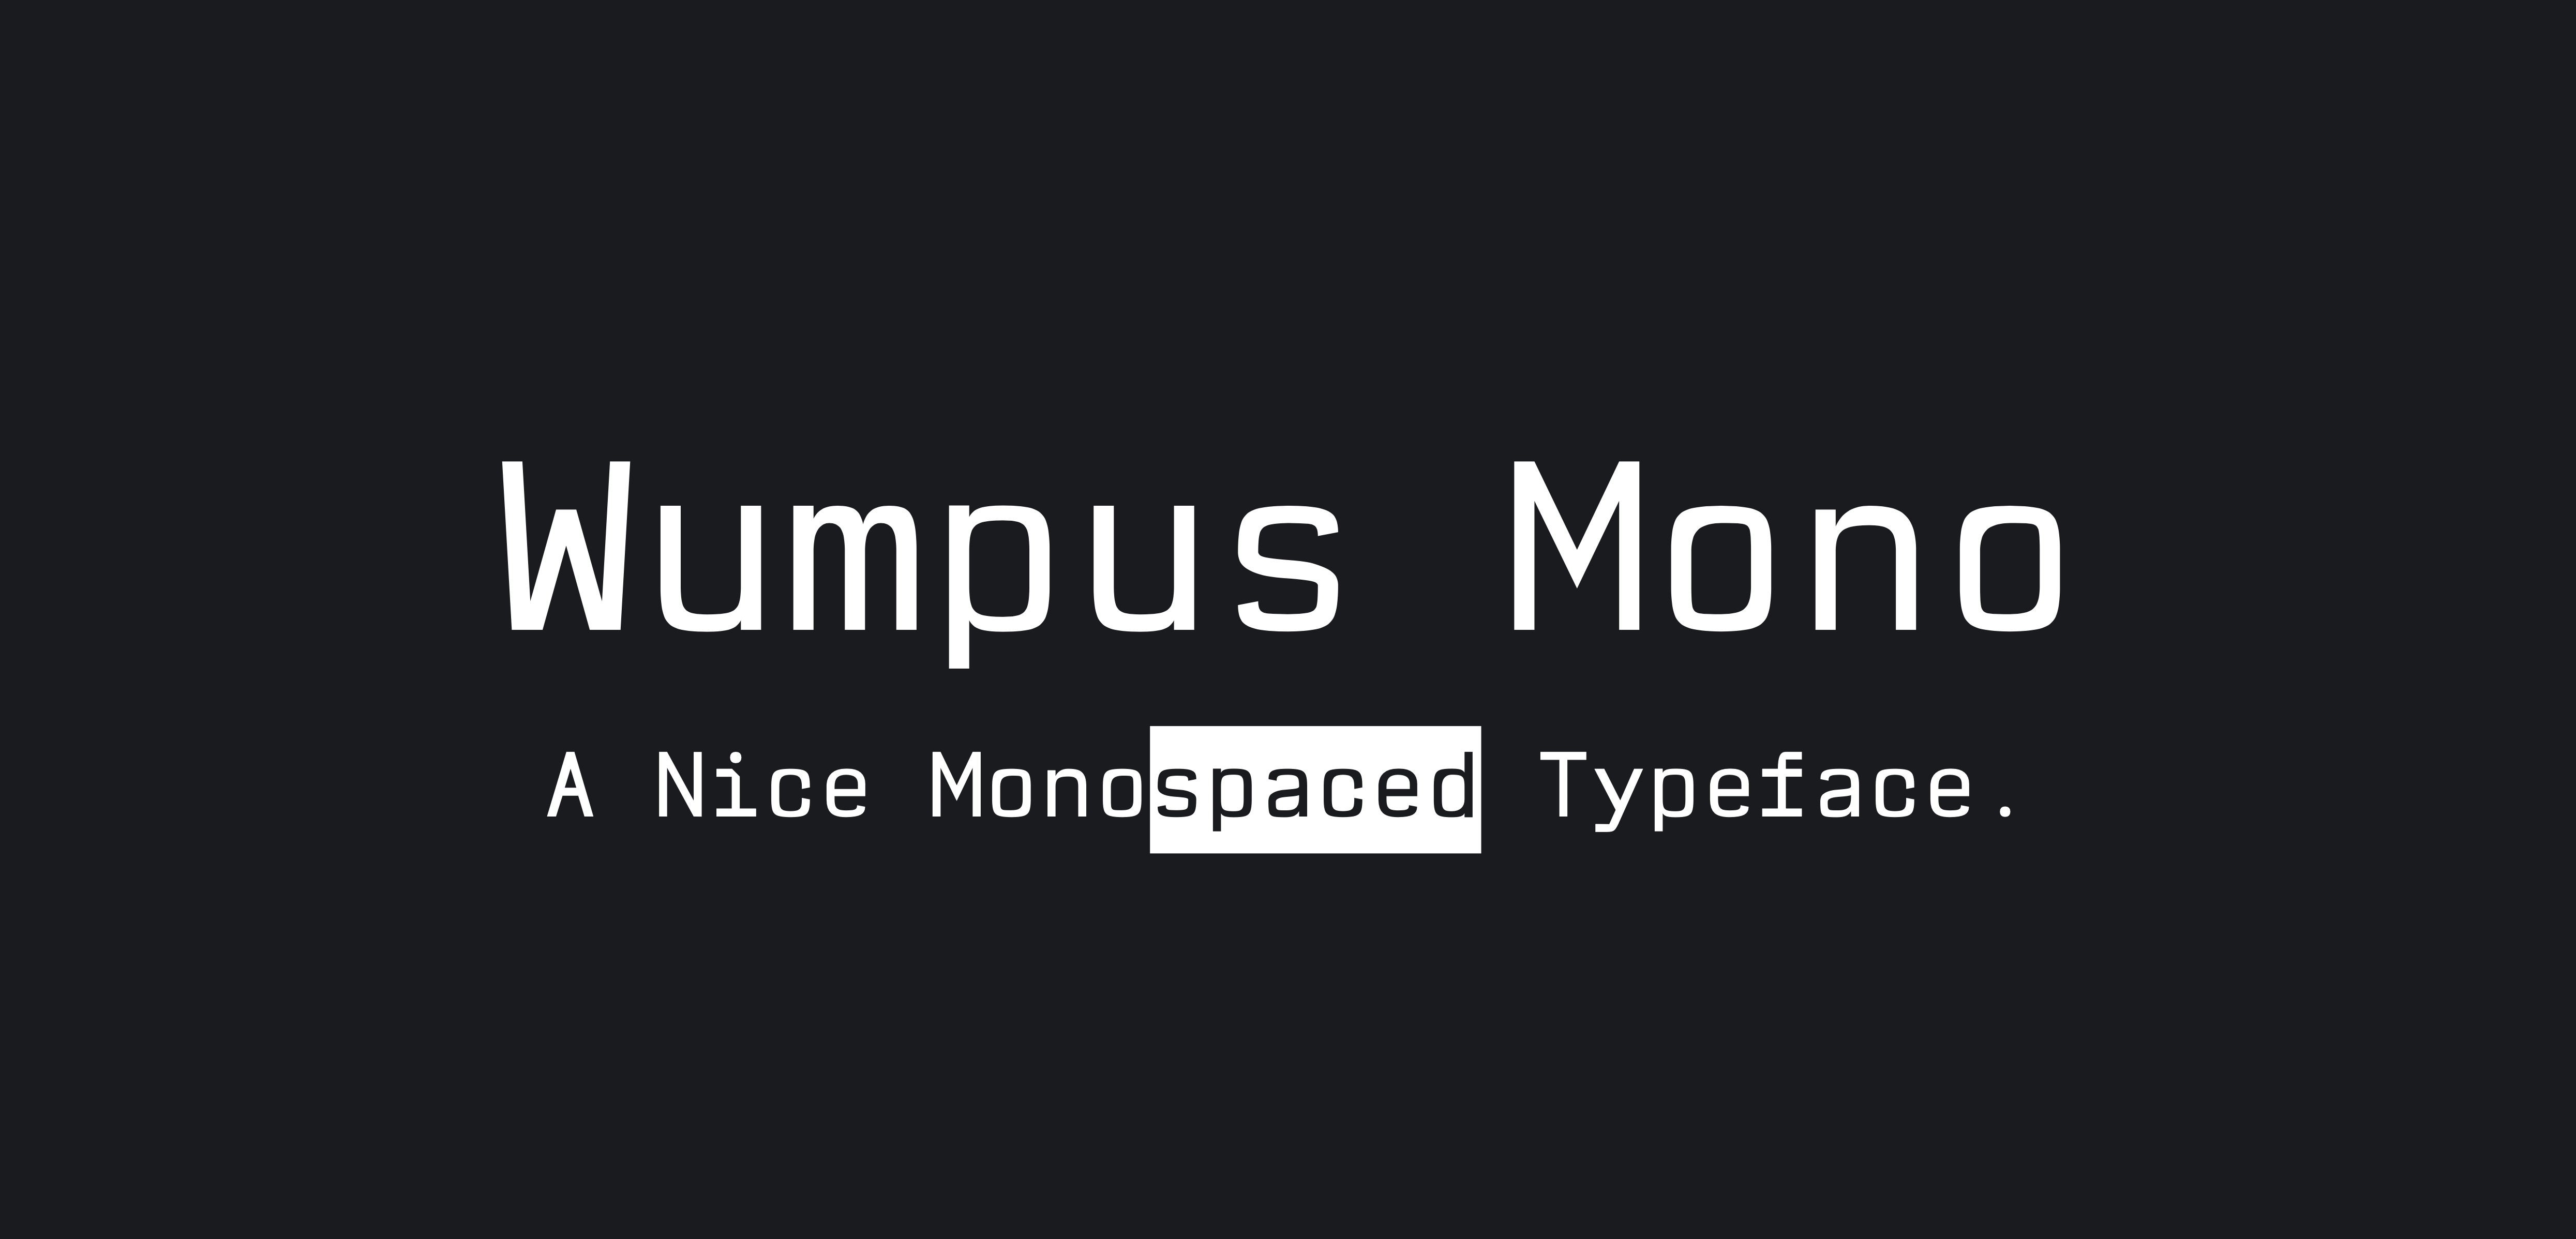 Wumpus Mono Logo